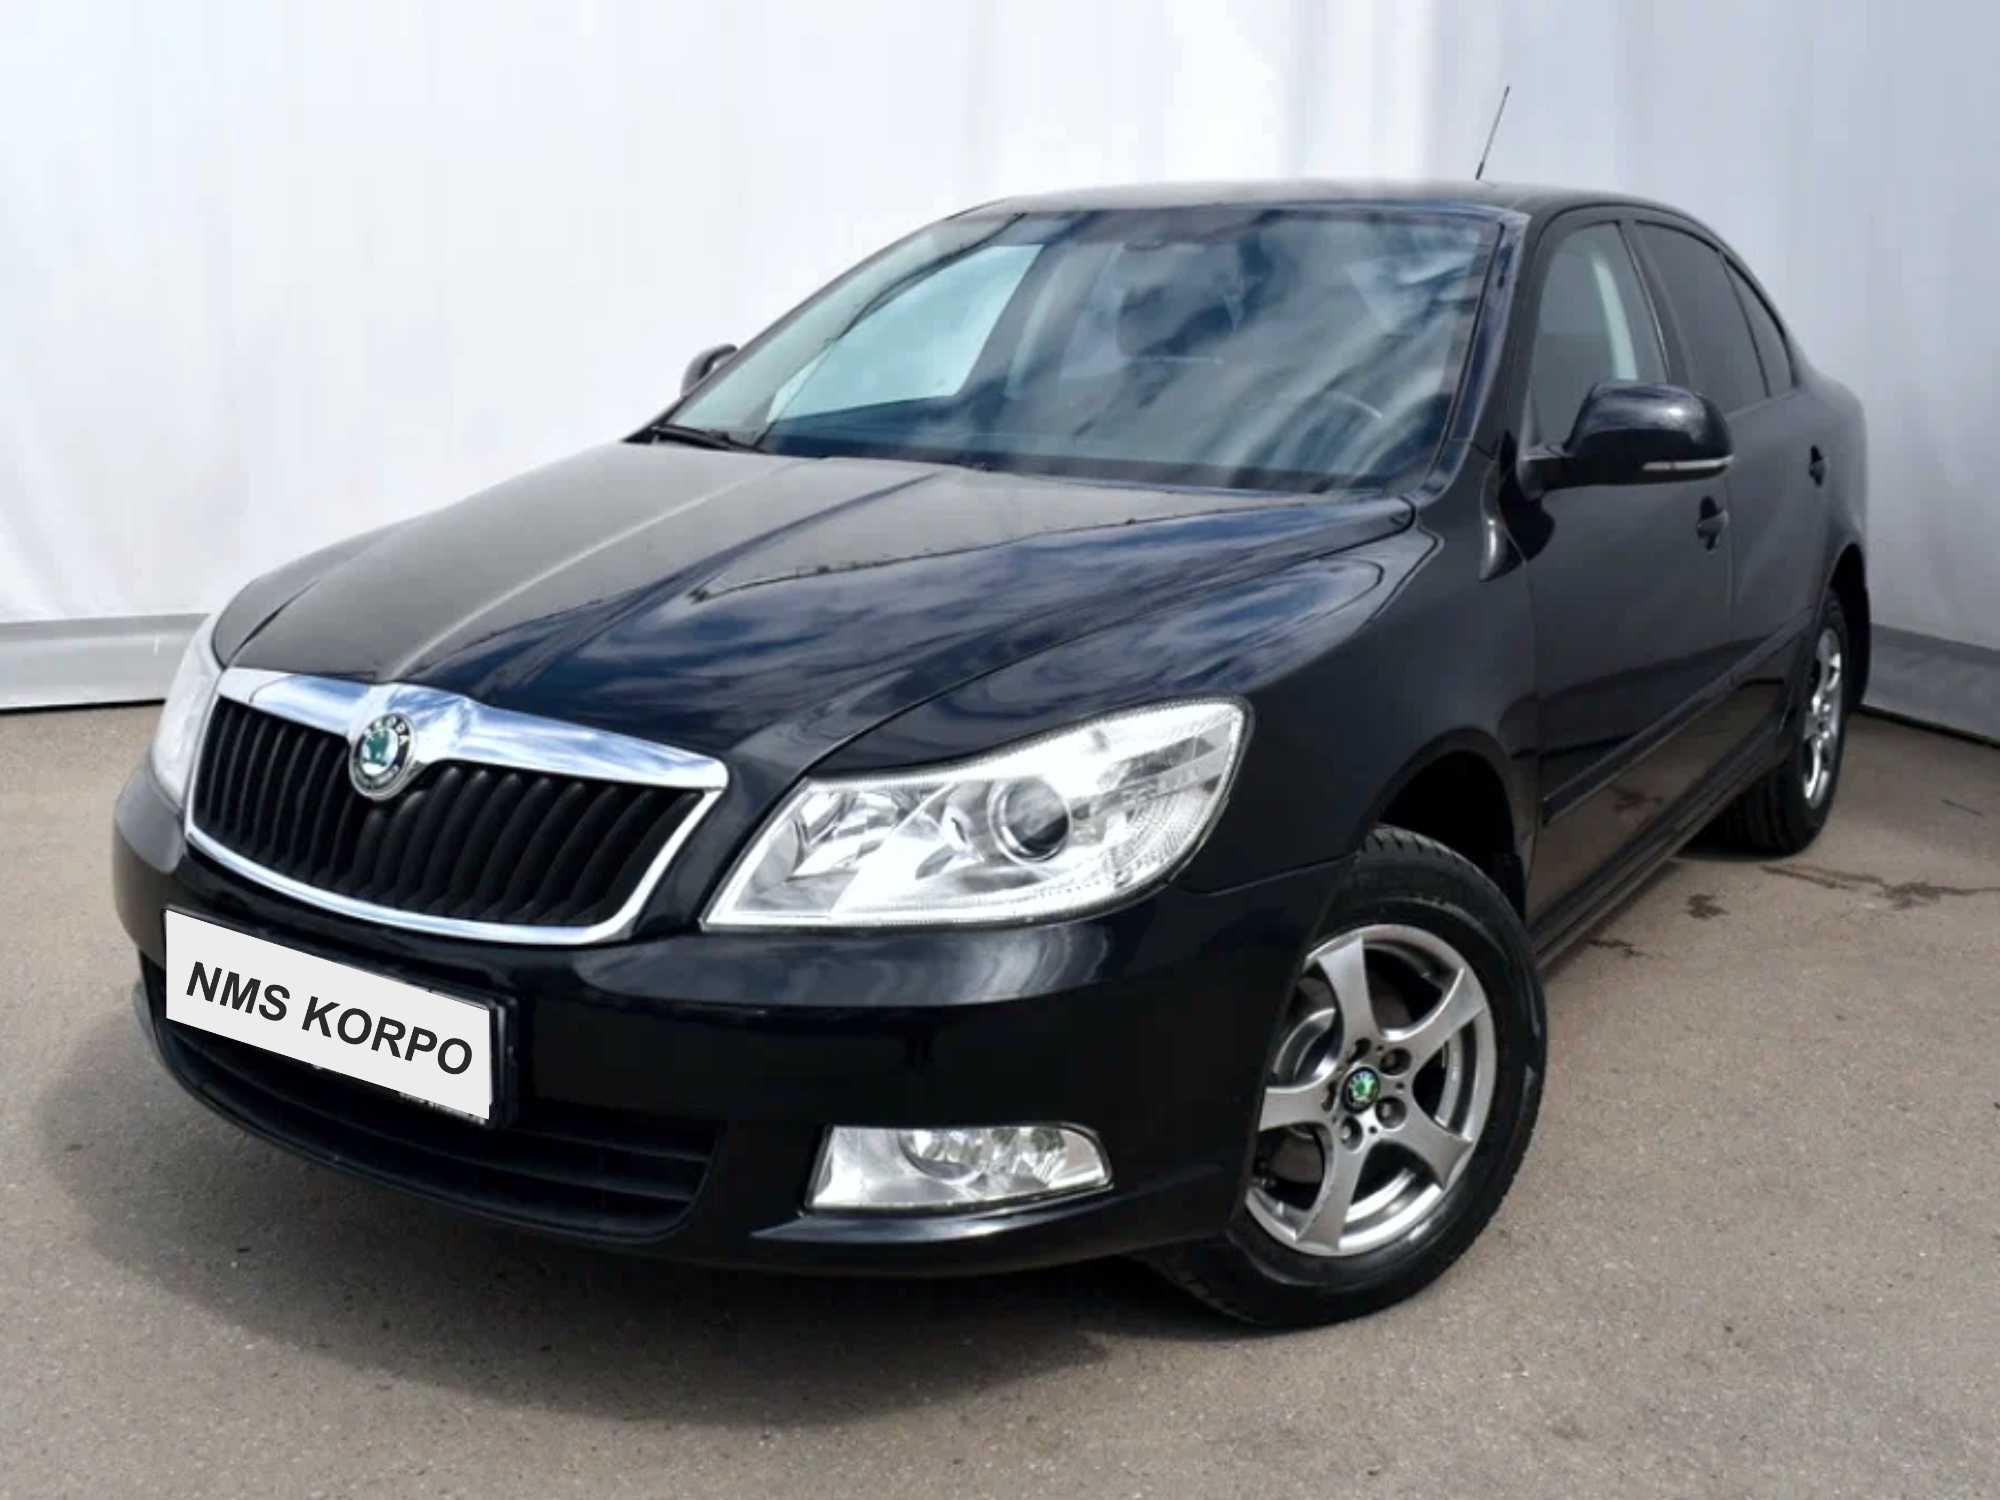 Wynajem samochodu TAXI/UBER BOLT FREENOW - Bonus od 800 PLN co tydzień